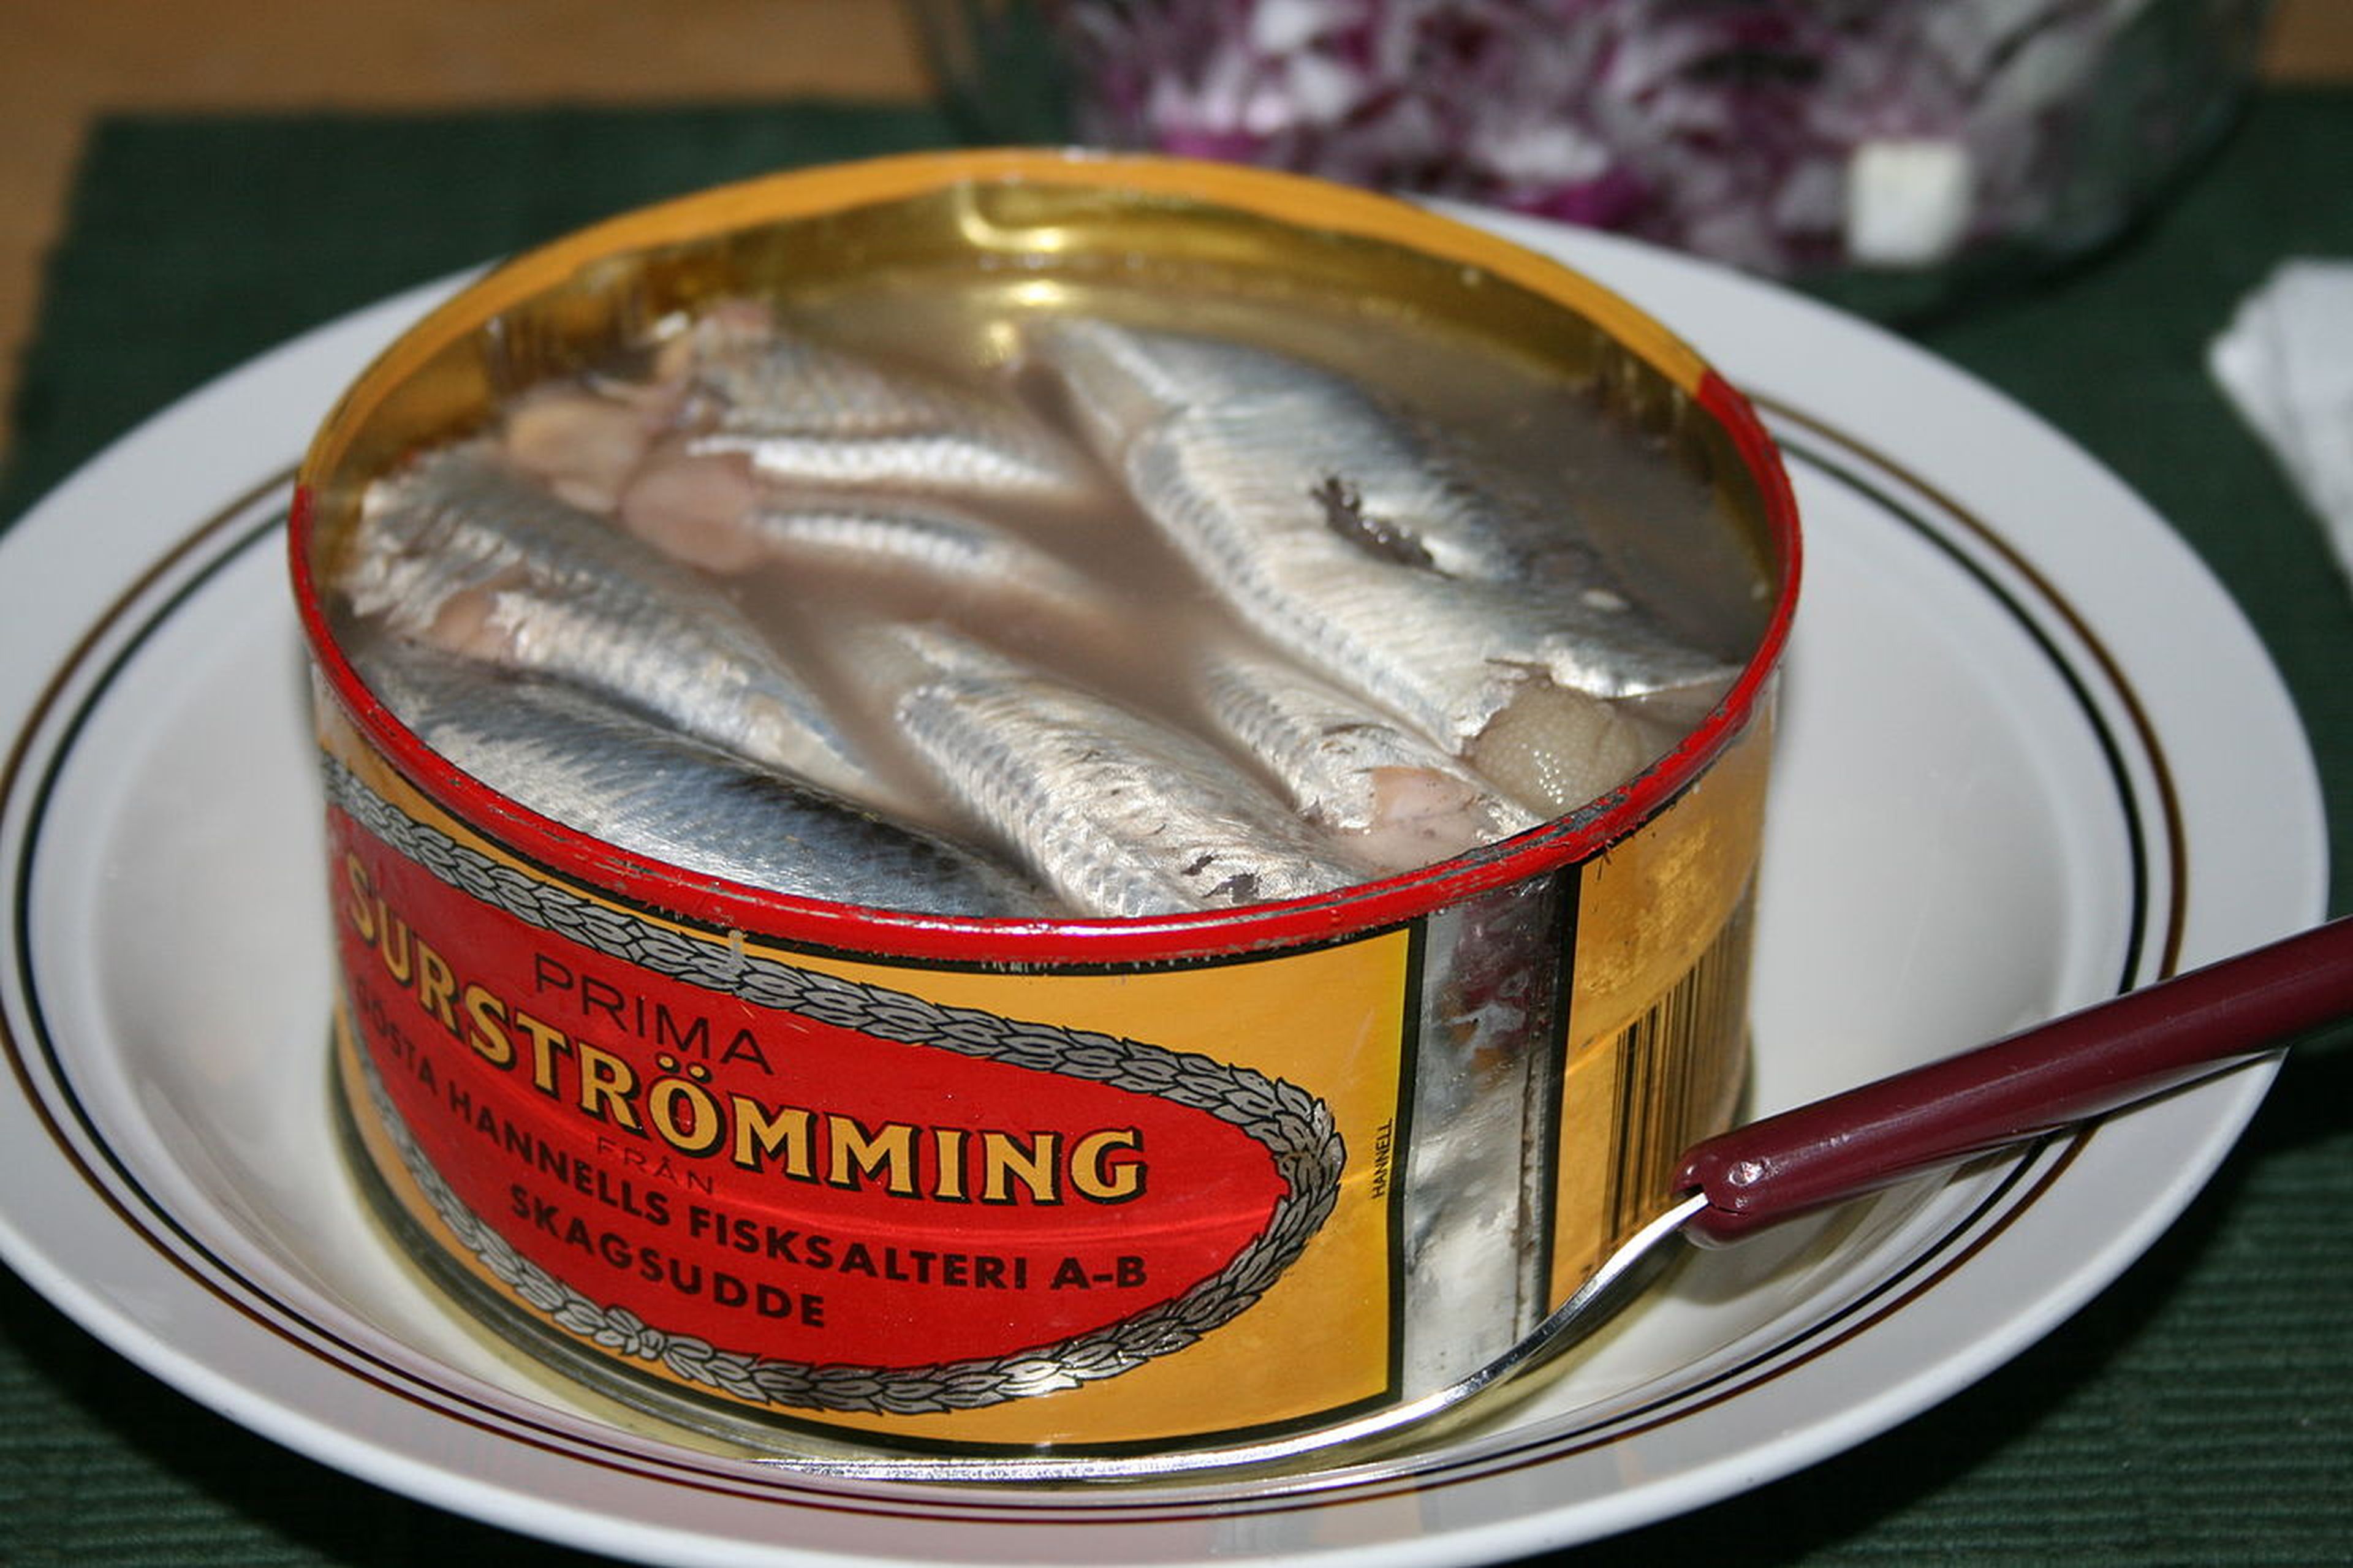 Surströmming, arenque fermentado